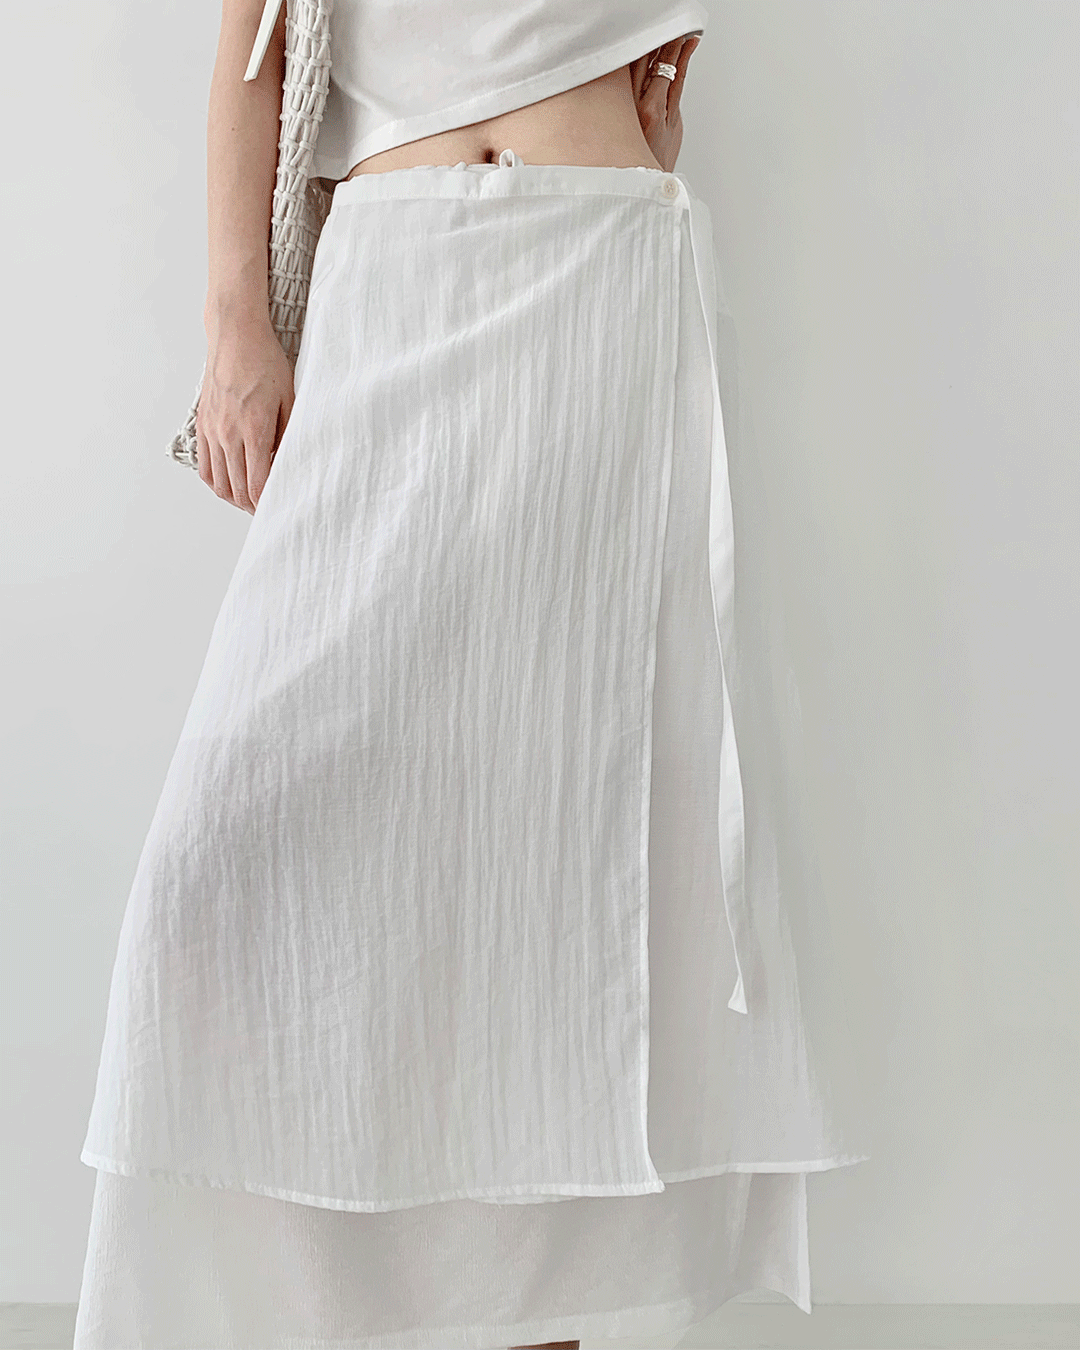 Layered skirt